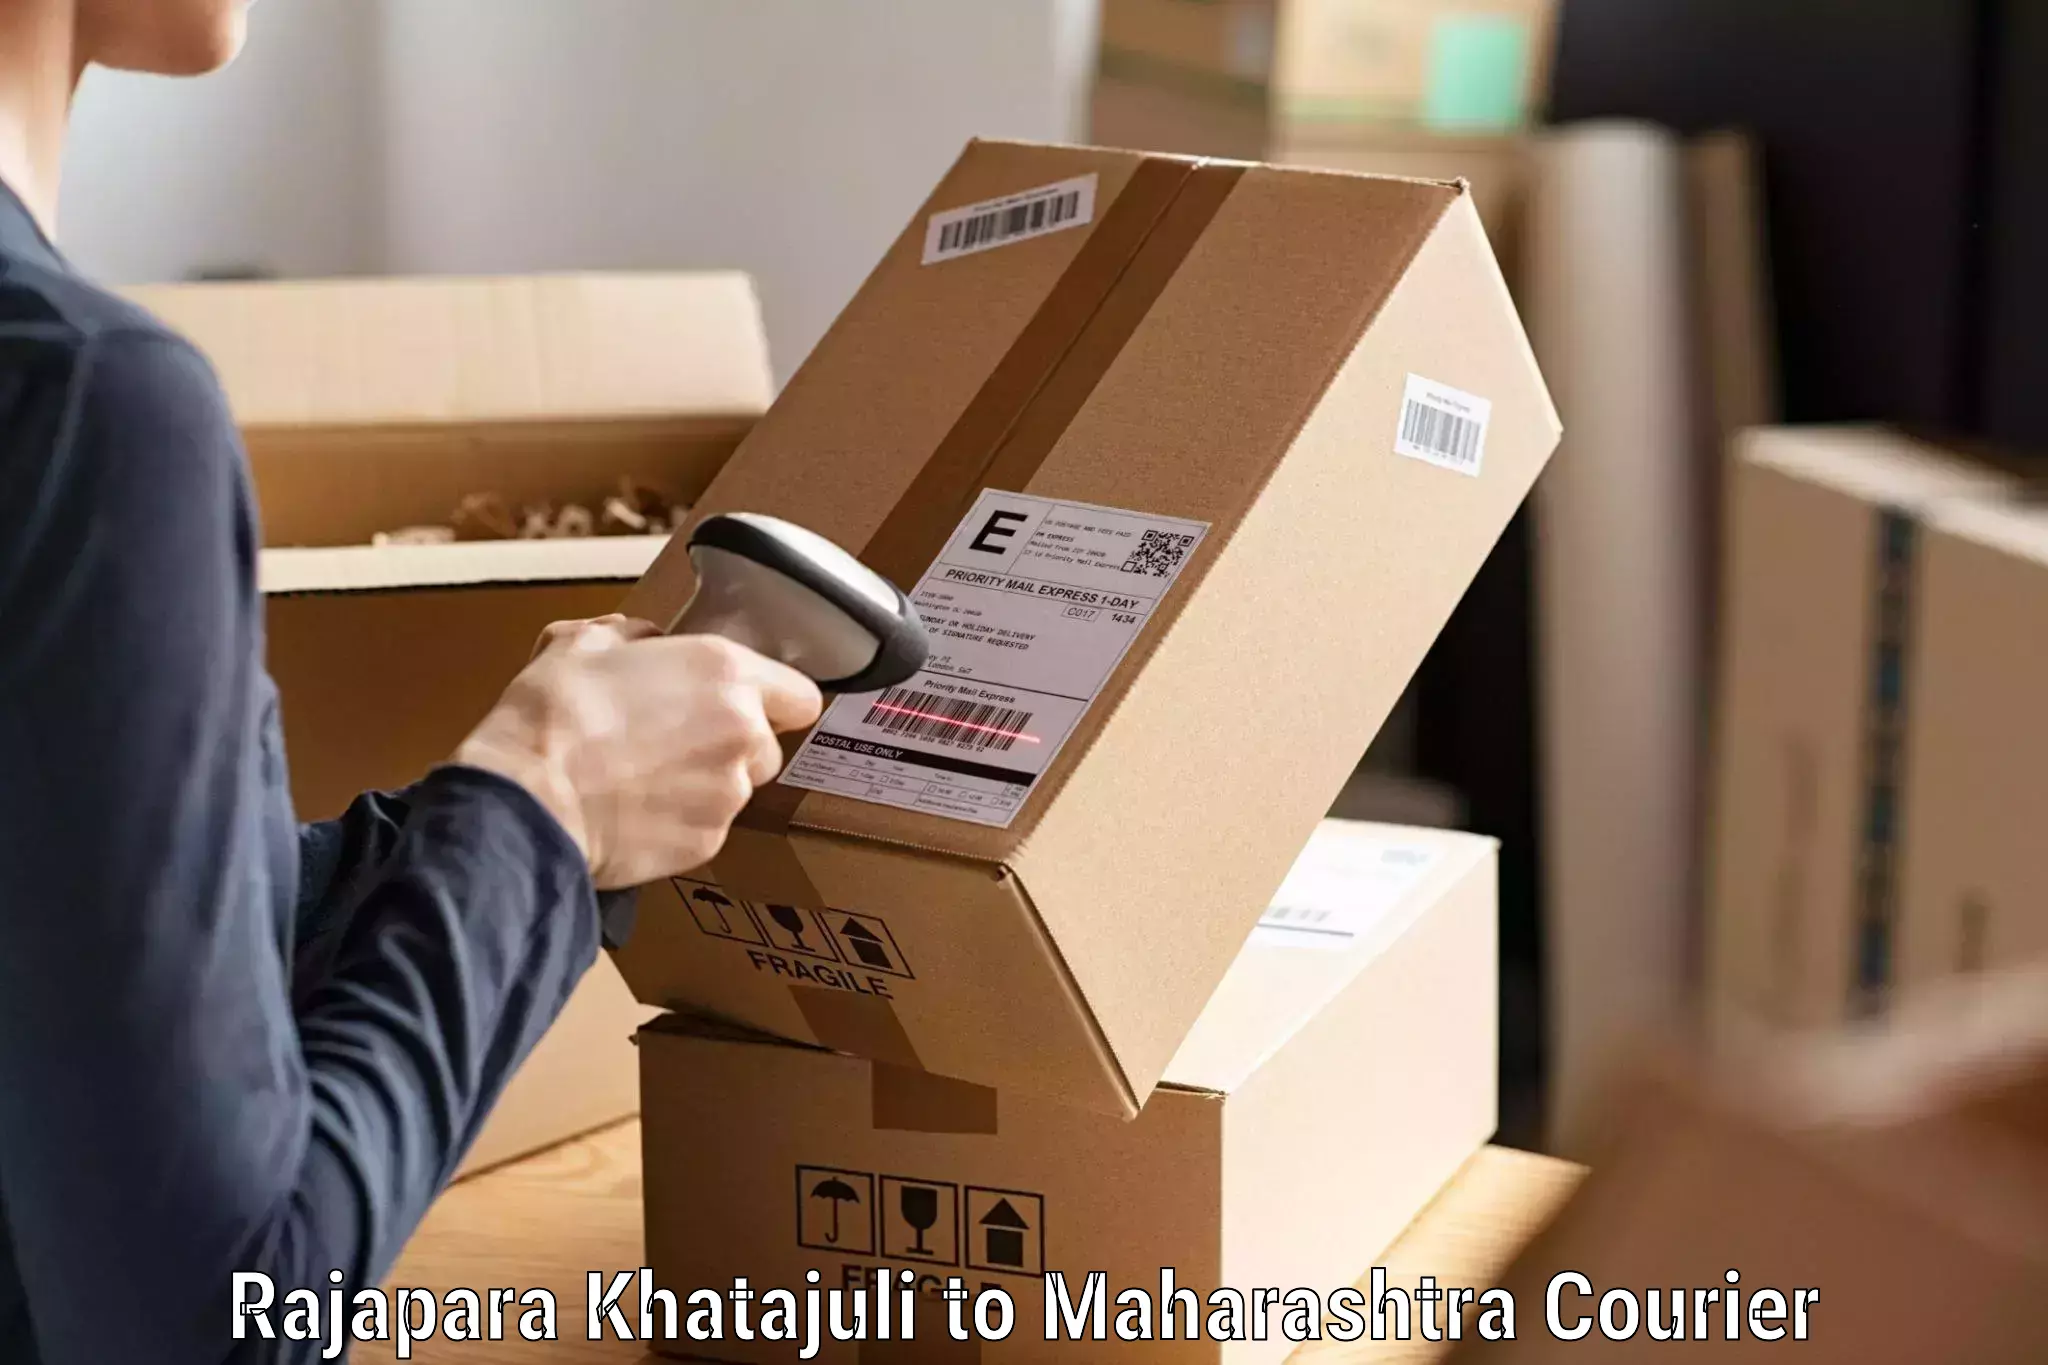 Courier tracking online Rajapara Khatajuli to Chimur